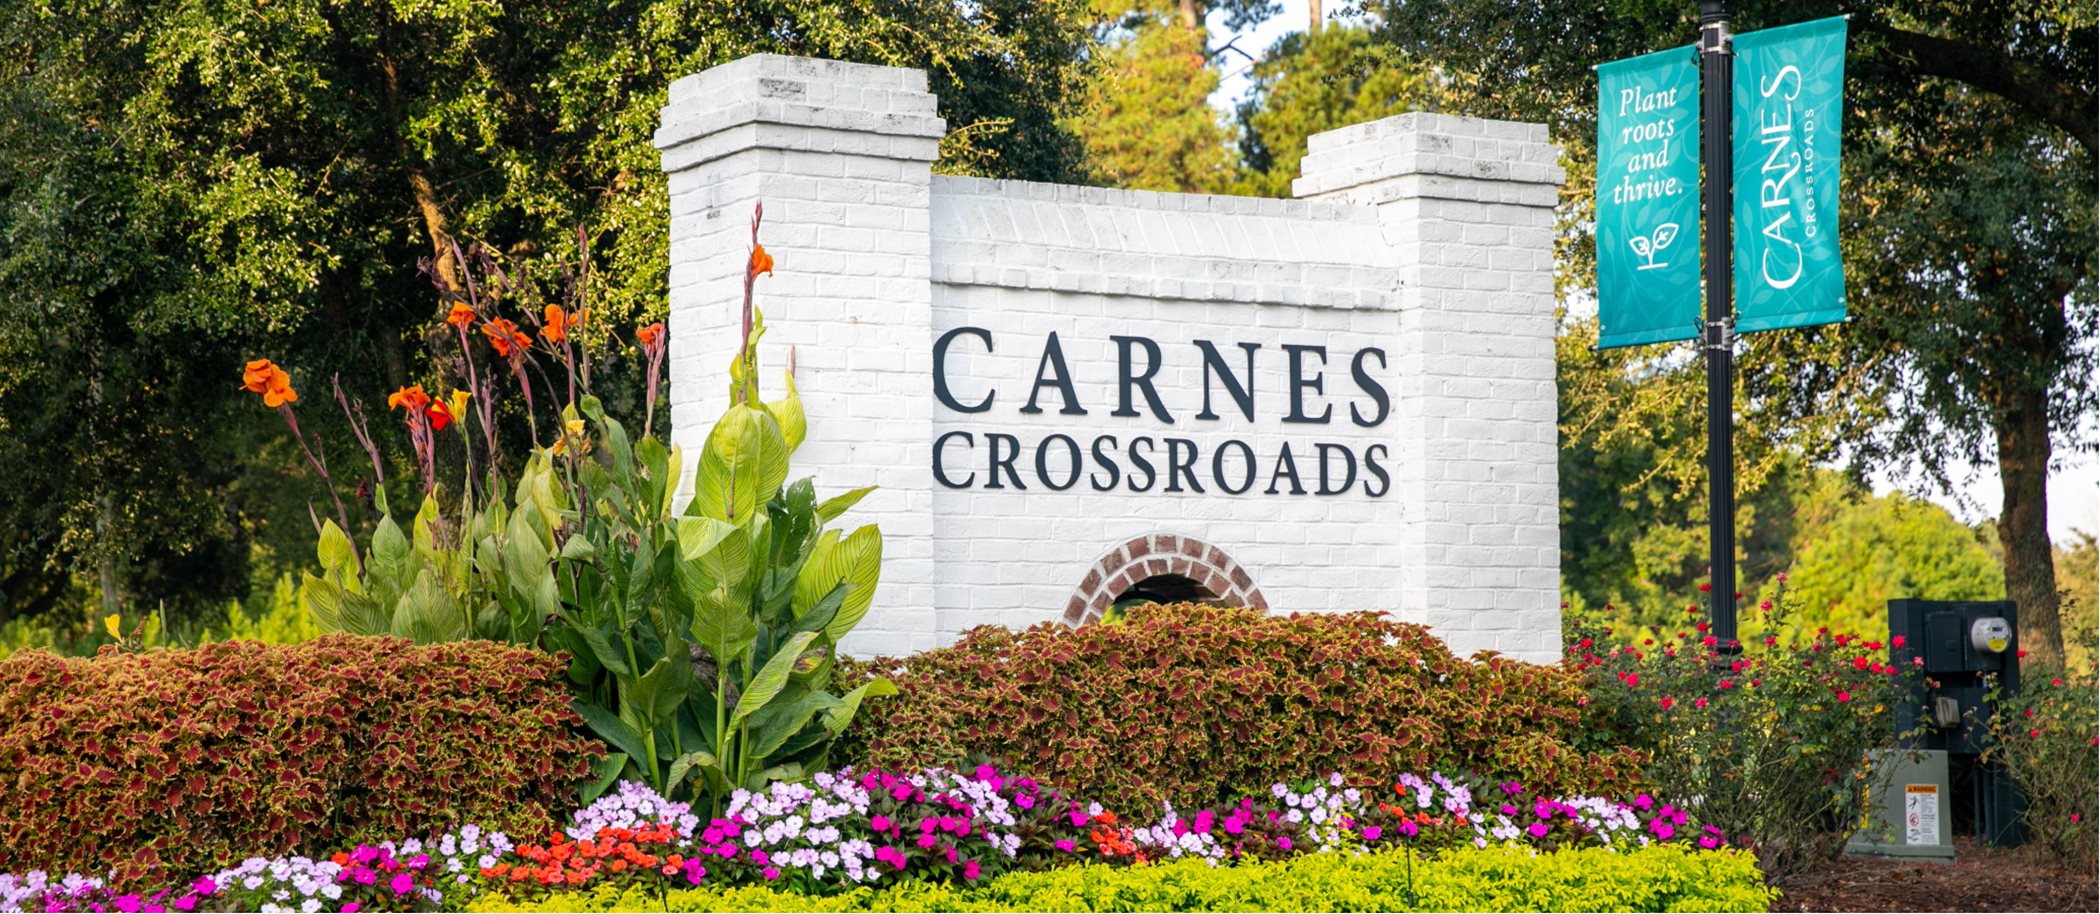 Carnes crossroads community